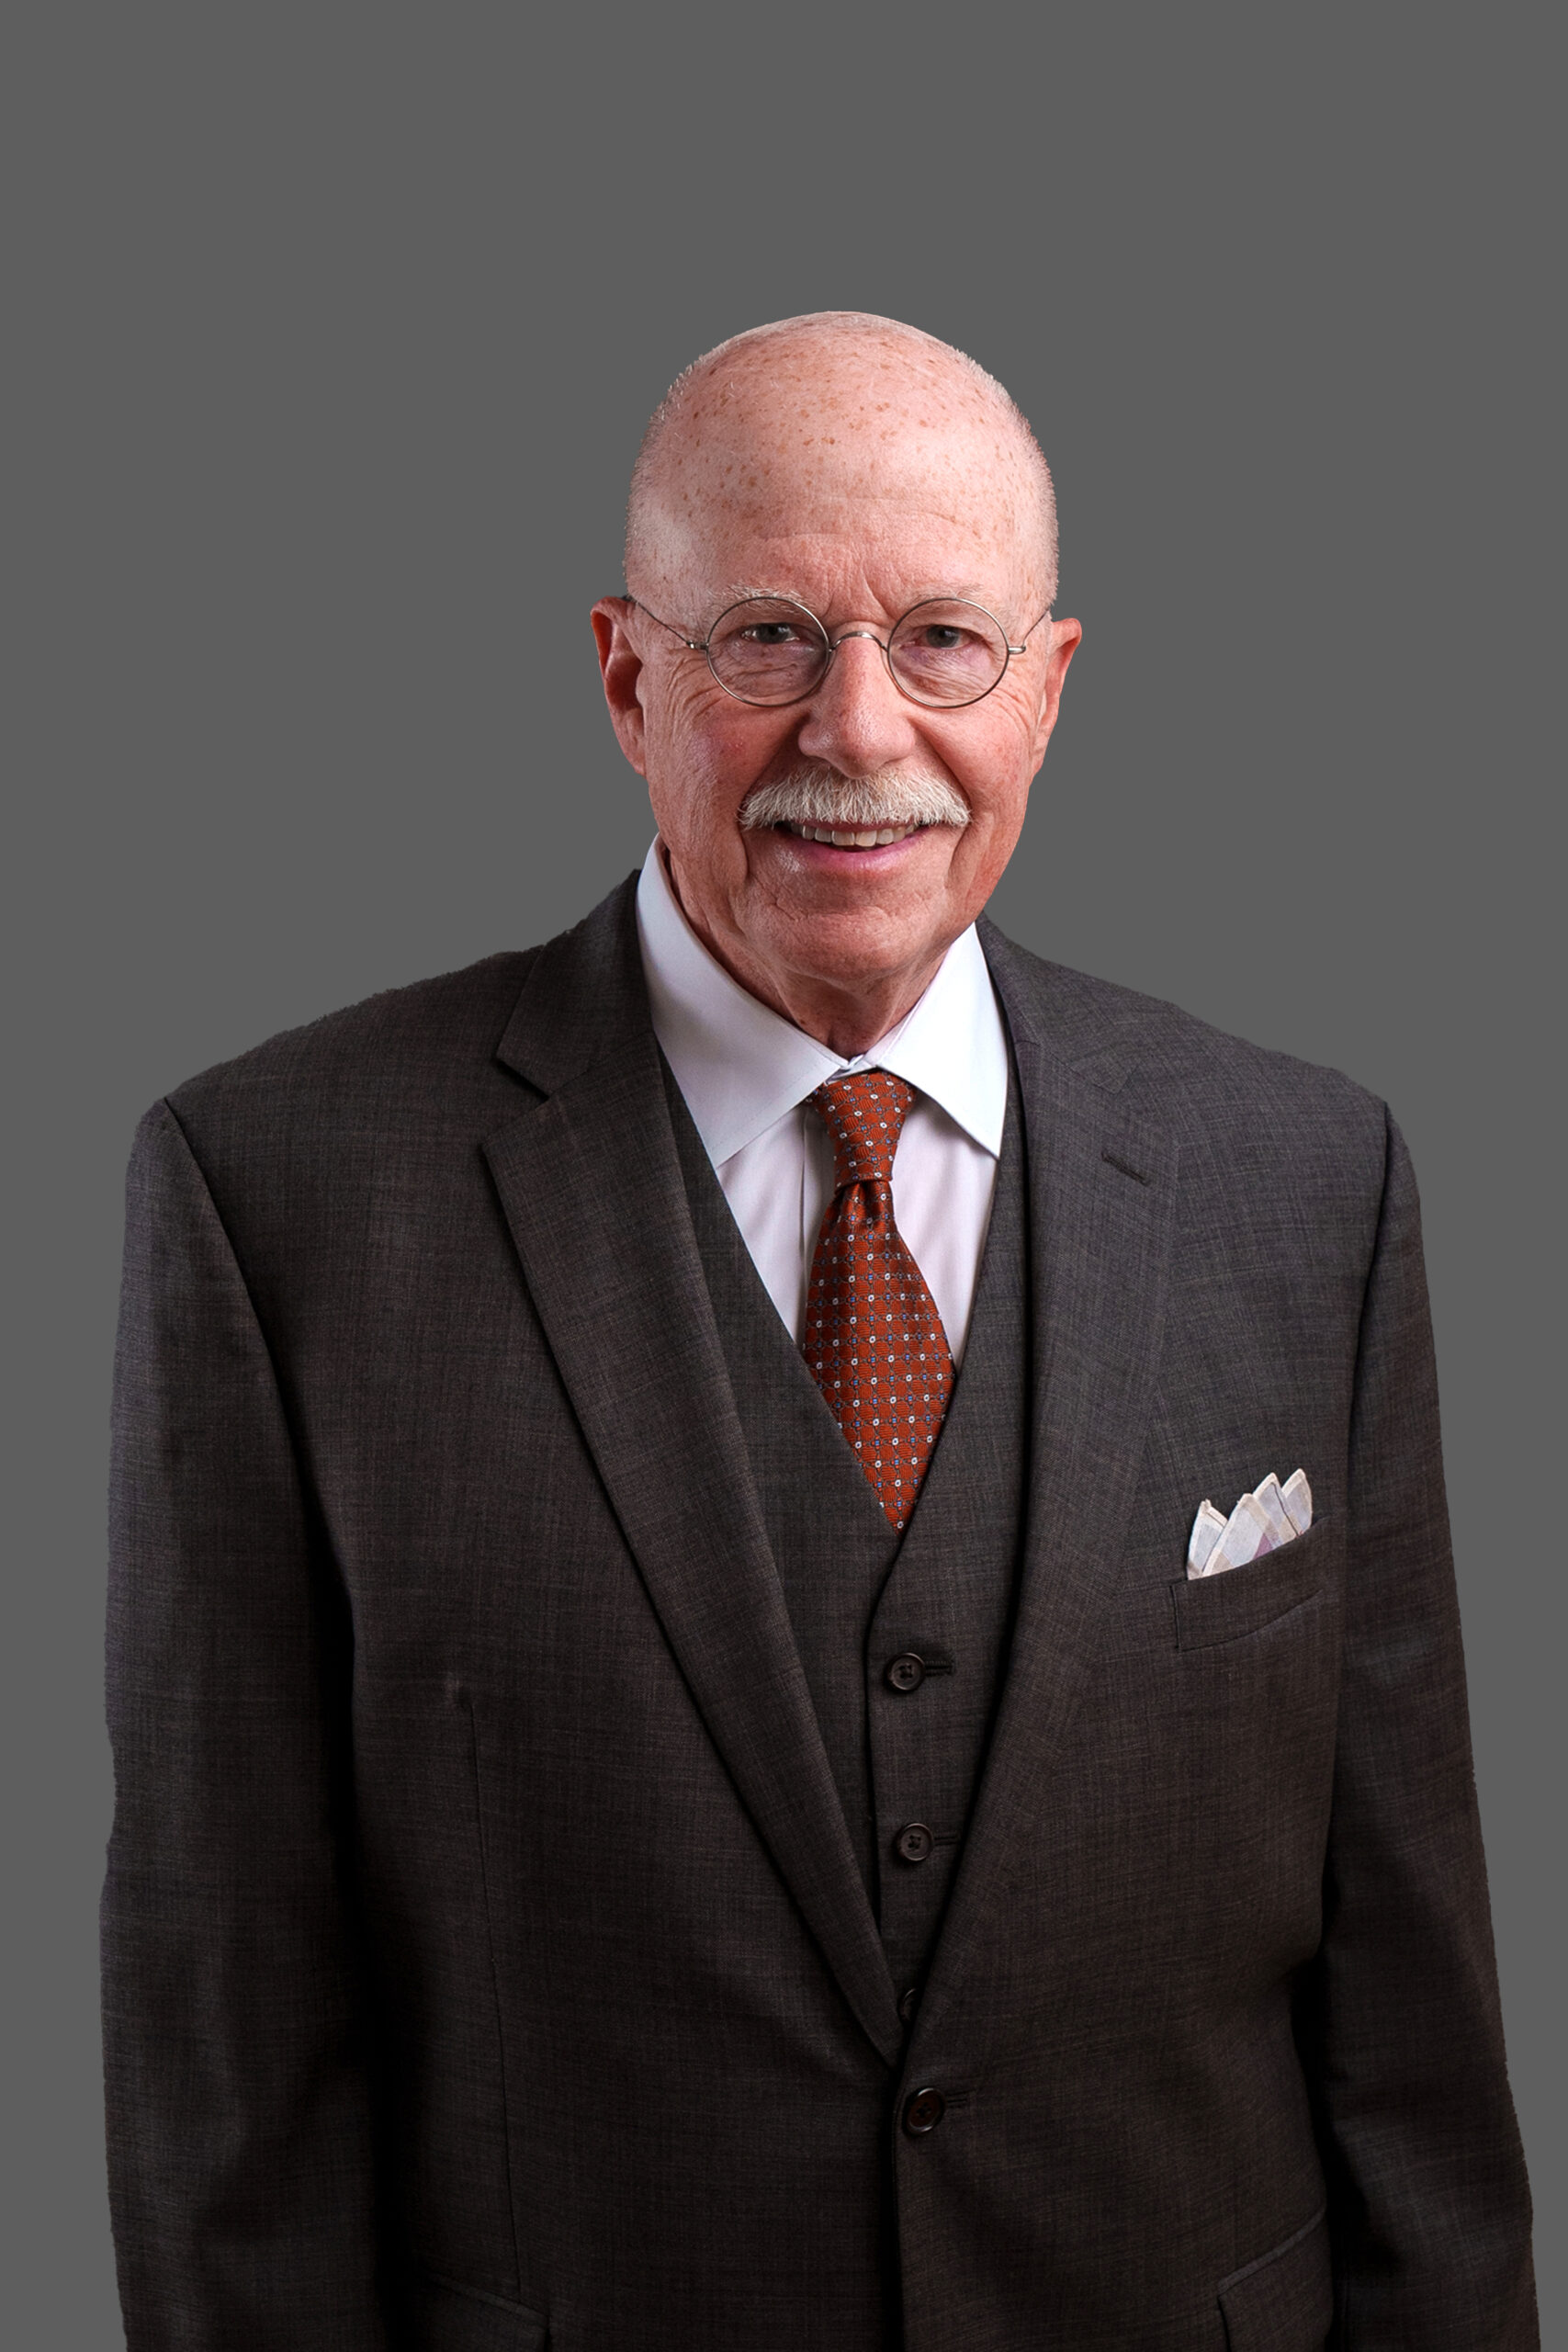 Dr. Richard J. Herschaft